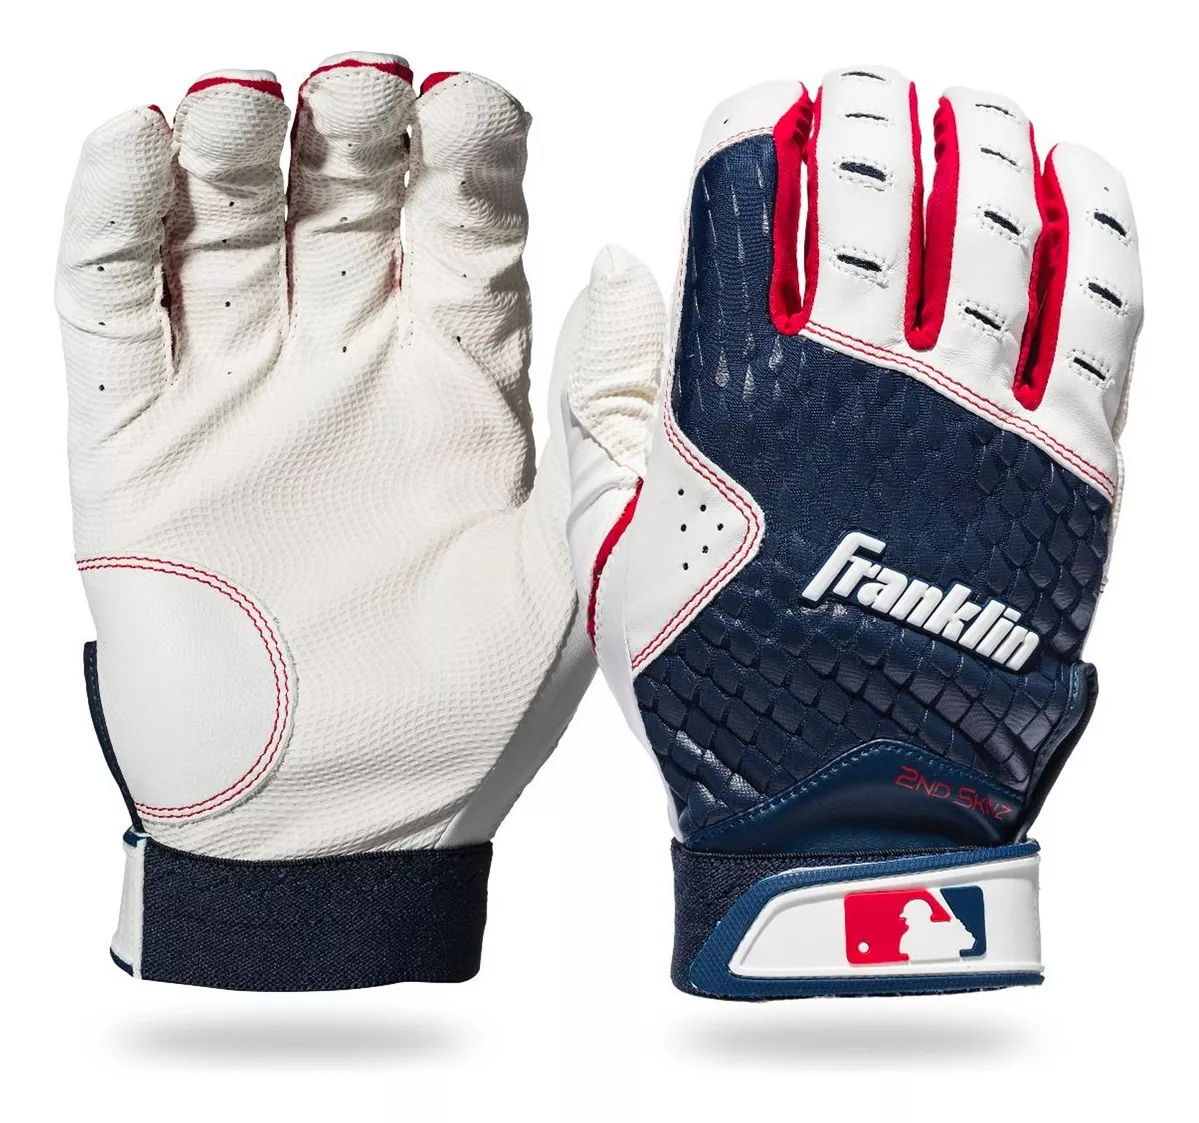 Segunda imagen para búsqueda de guantes de beisbol